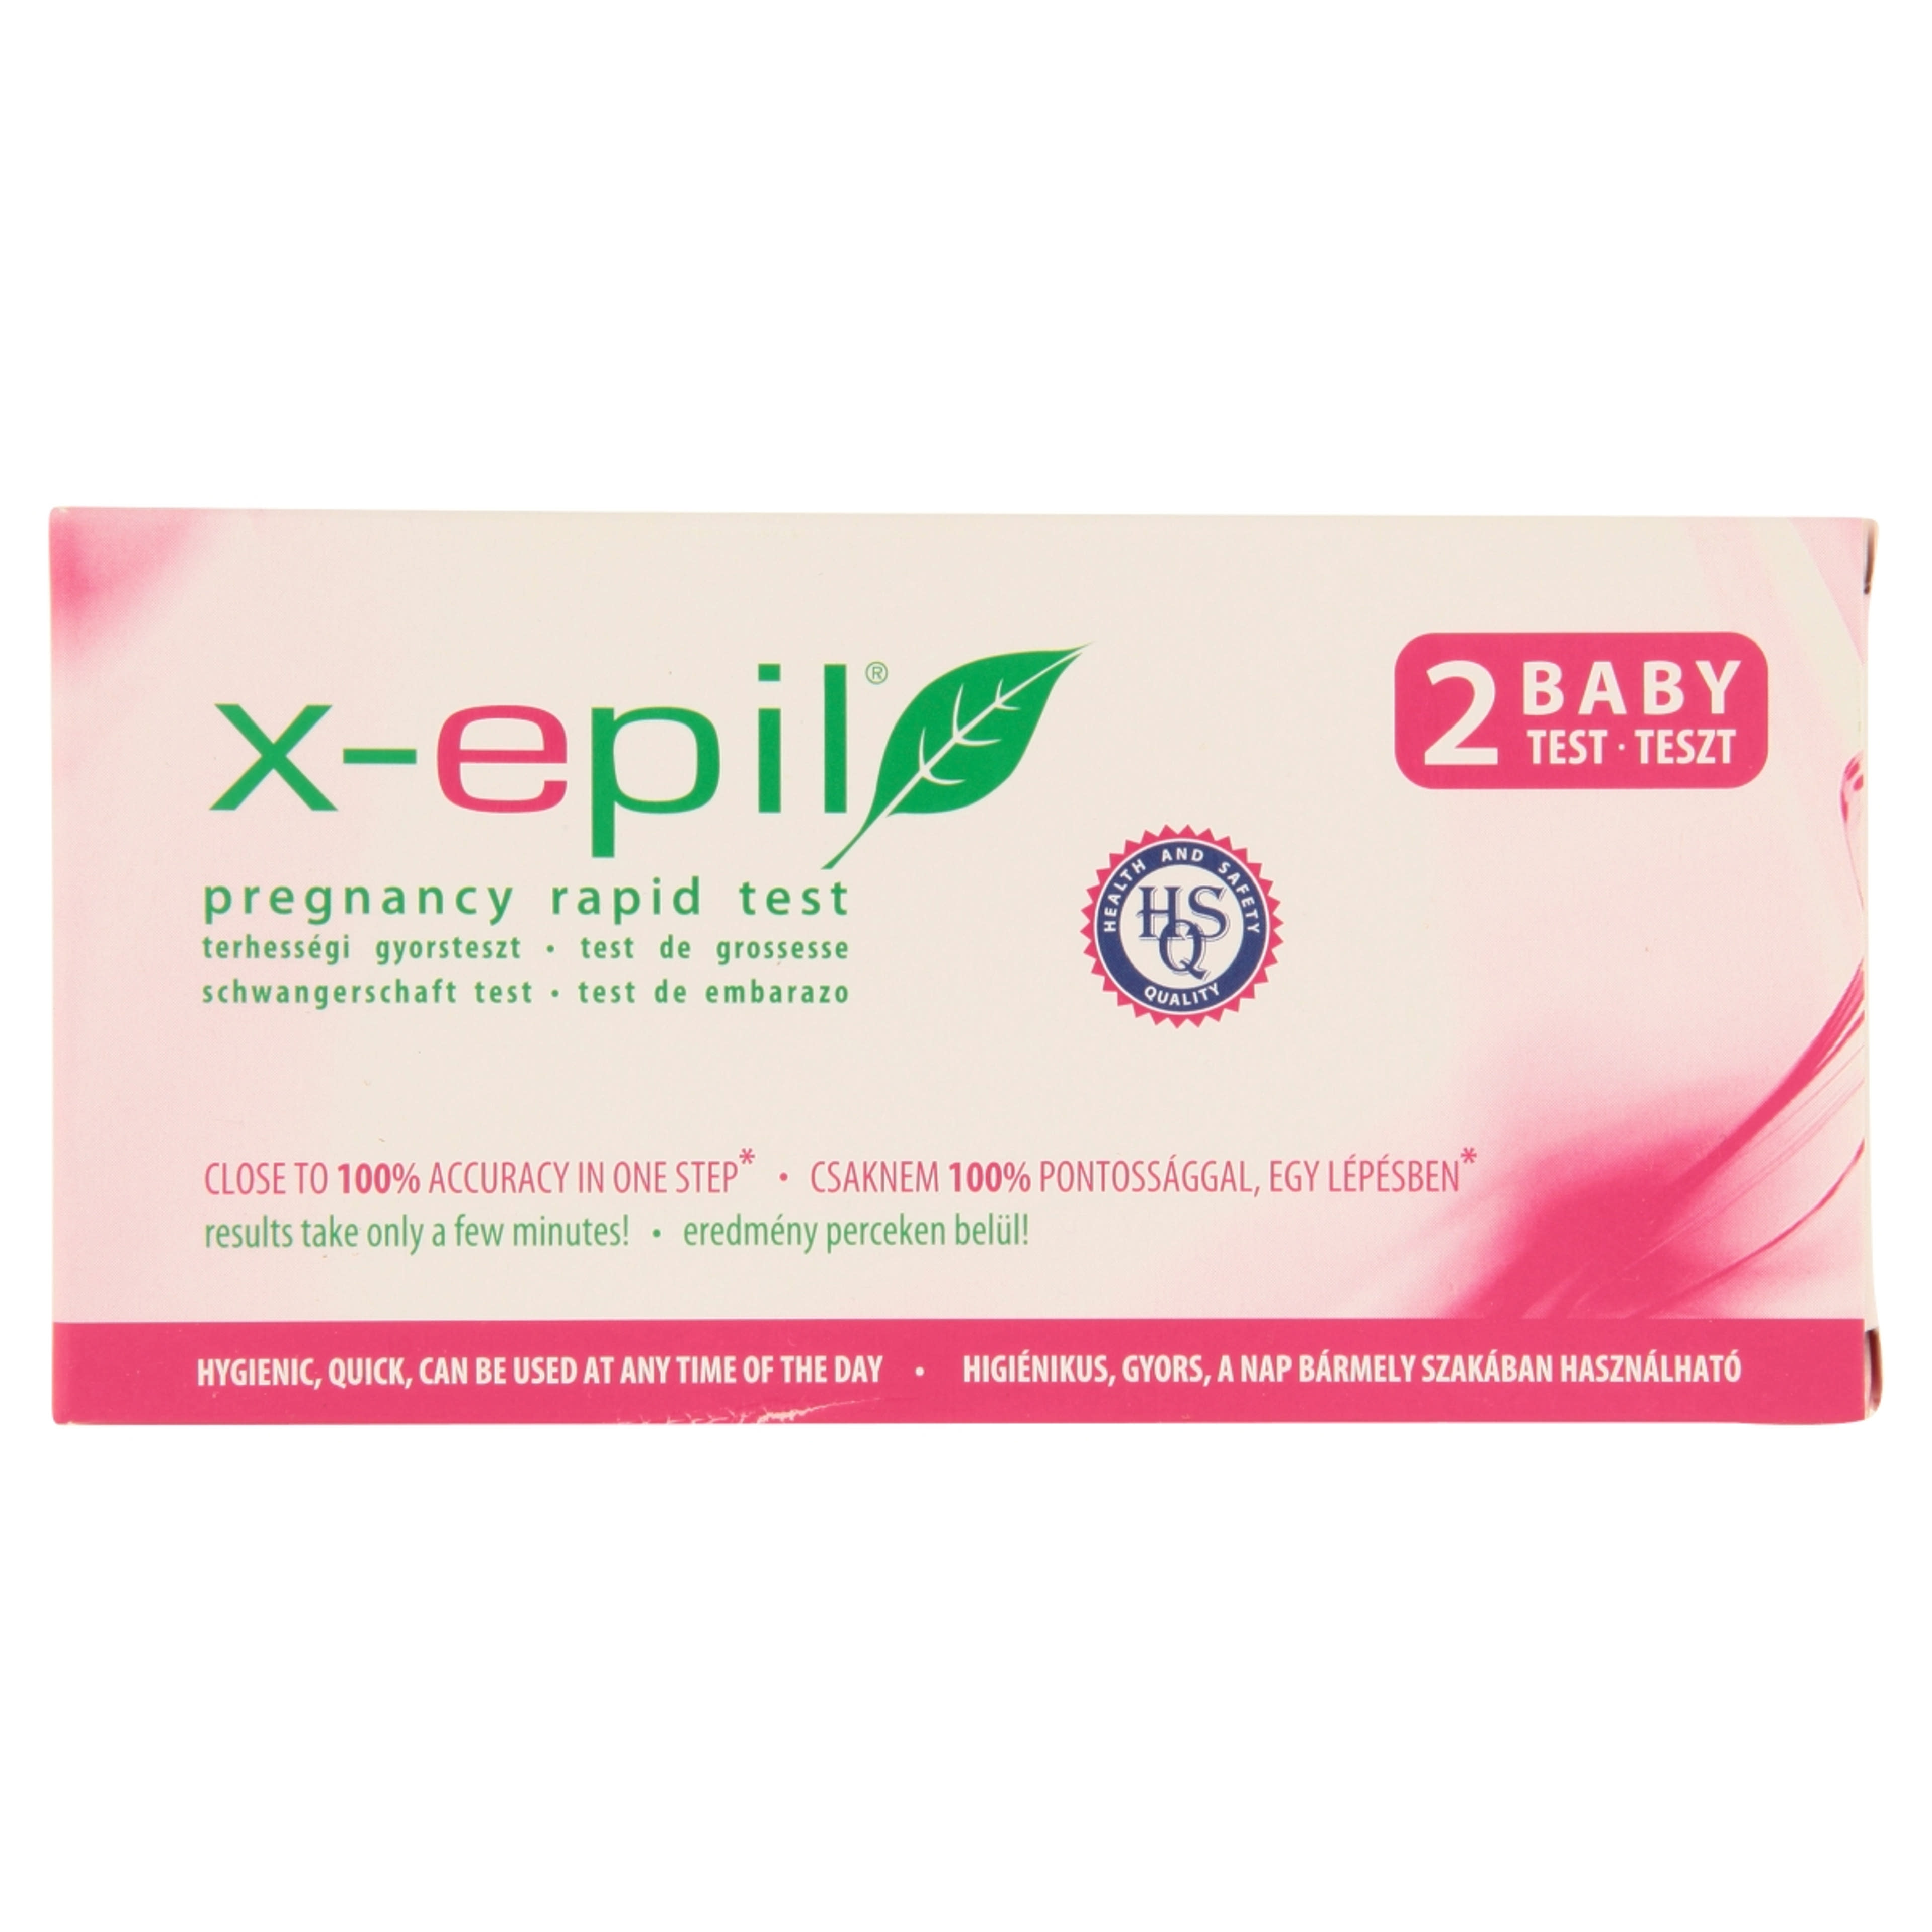 X-Epil terhességi gyorsteszt - 2 db